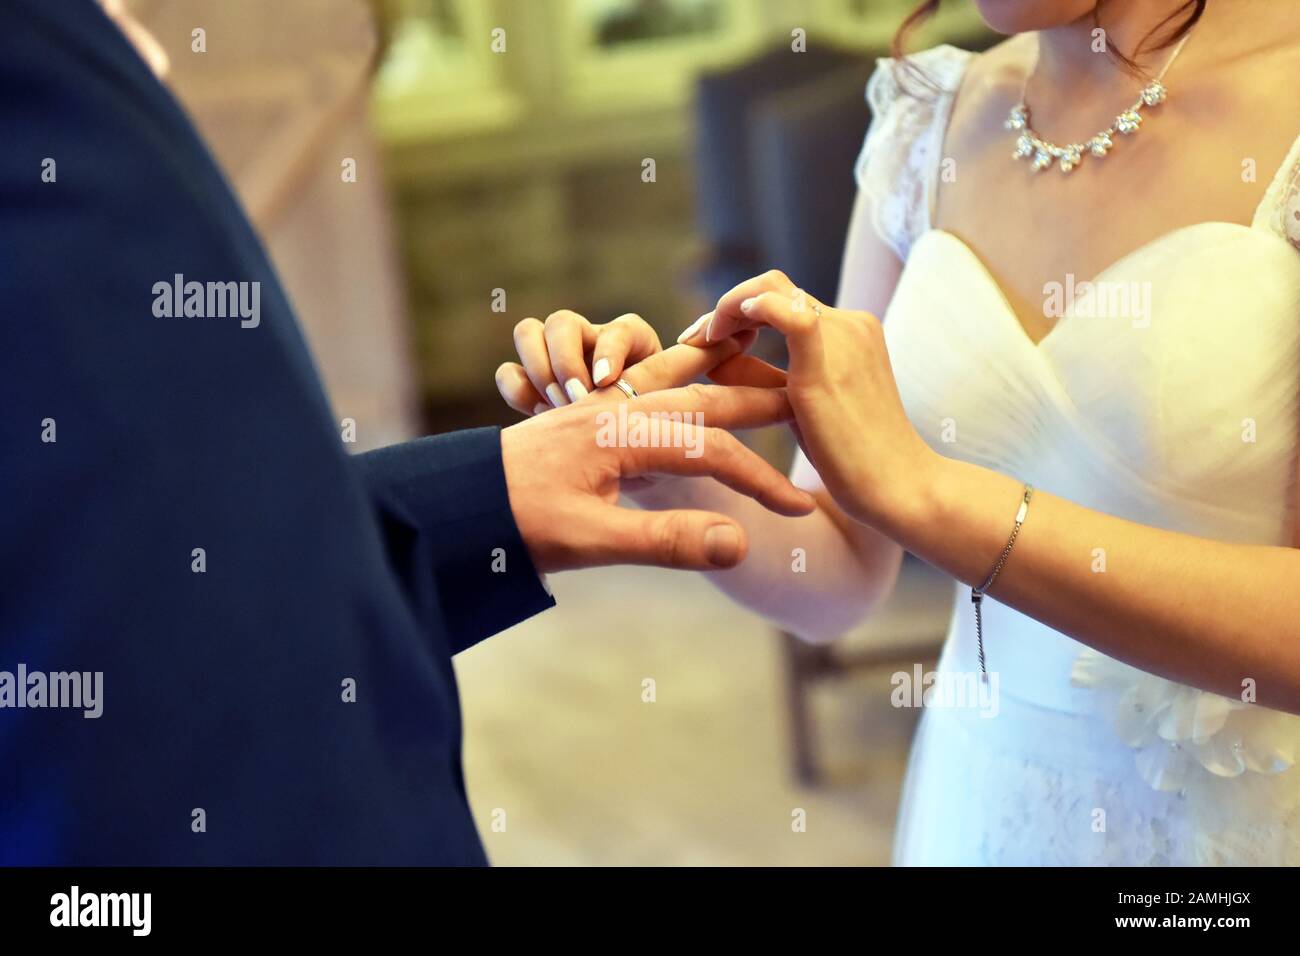 Les anneaux de mariage sont échangés lors d'une cérémonie de mariage traditionnelle, au Royaume-Uni Banque D'Images